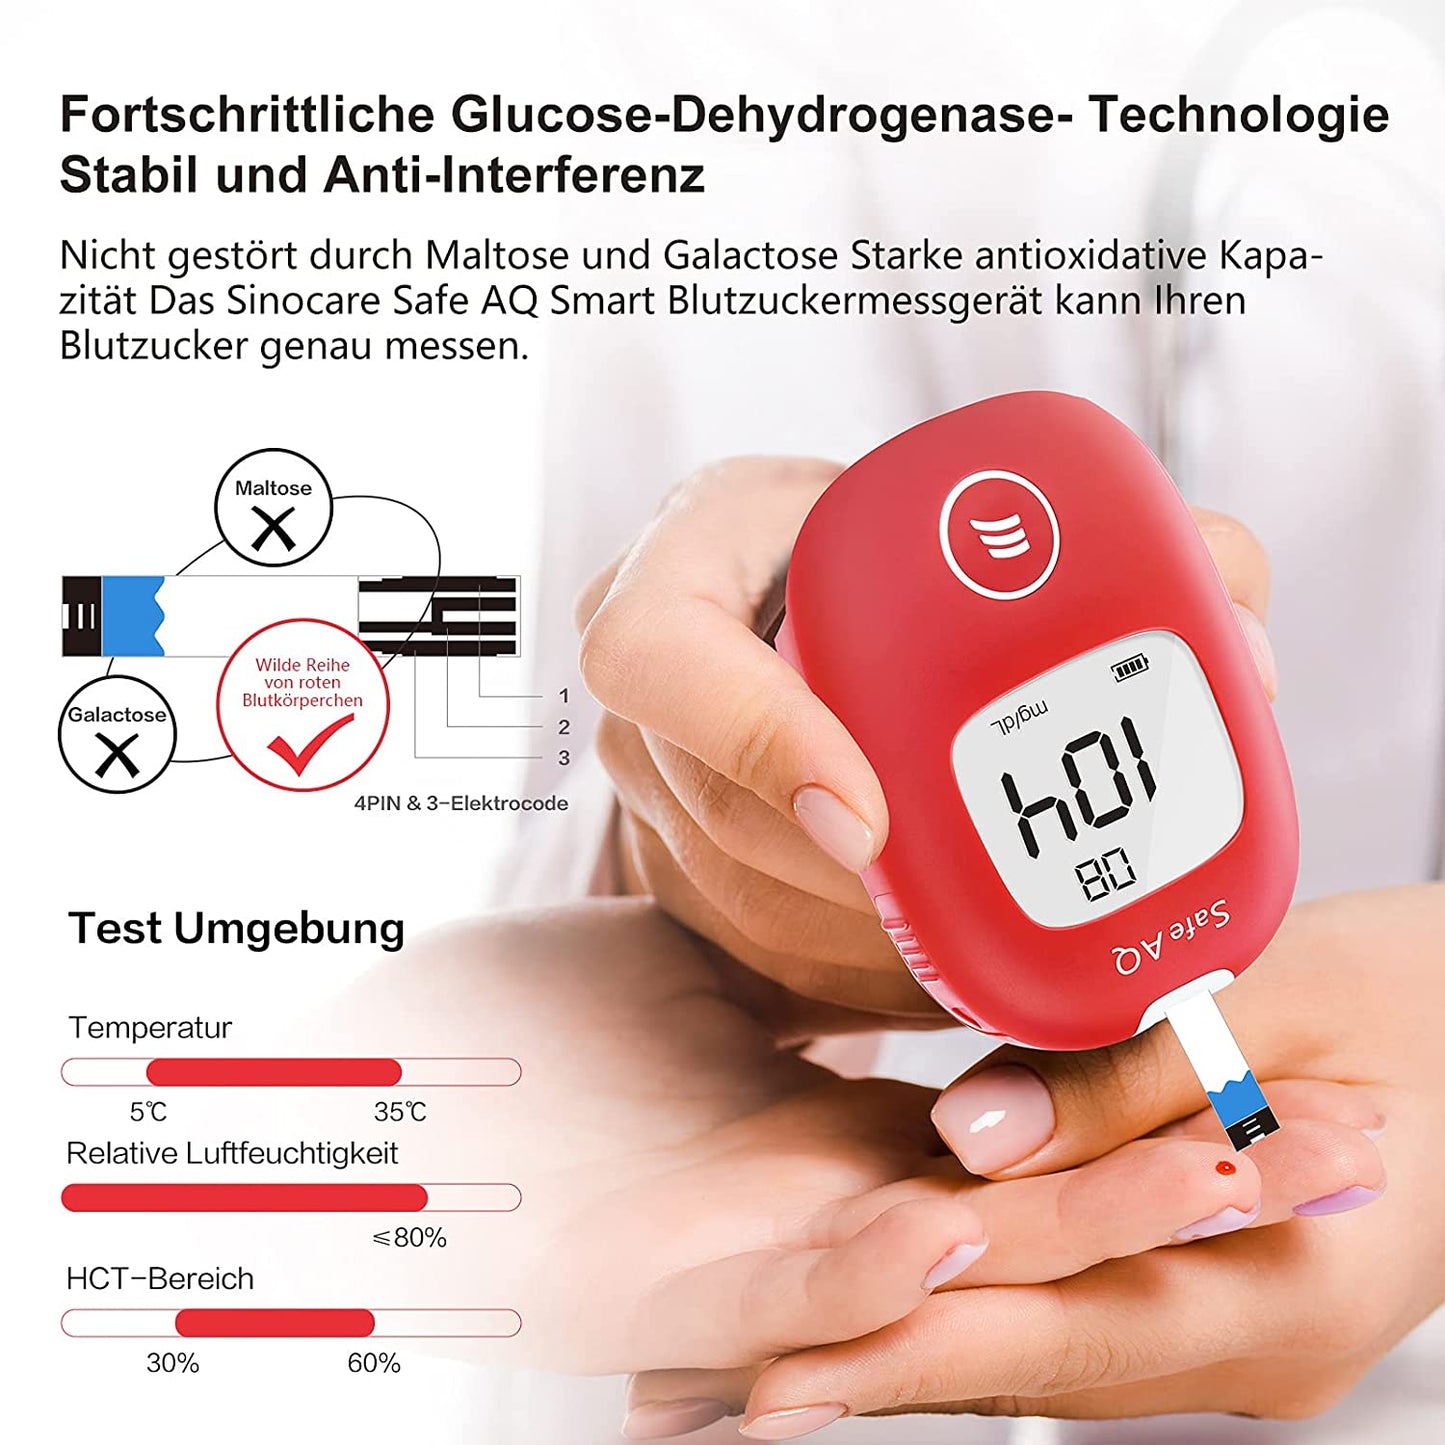 Sinocare Blutzuckermessgerät, mg/dL, blutzuckermessgerät set mit teststreifen, Selbsttest Diabetes-Set, Portable für Reise(Safe AQ smart)